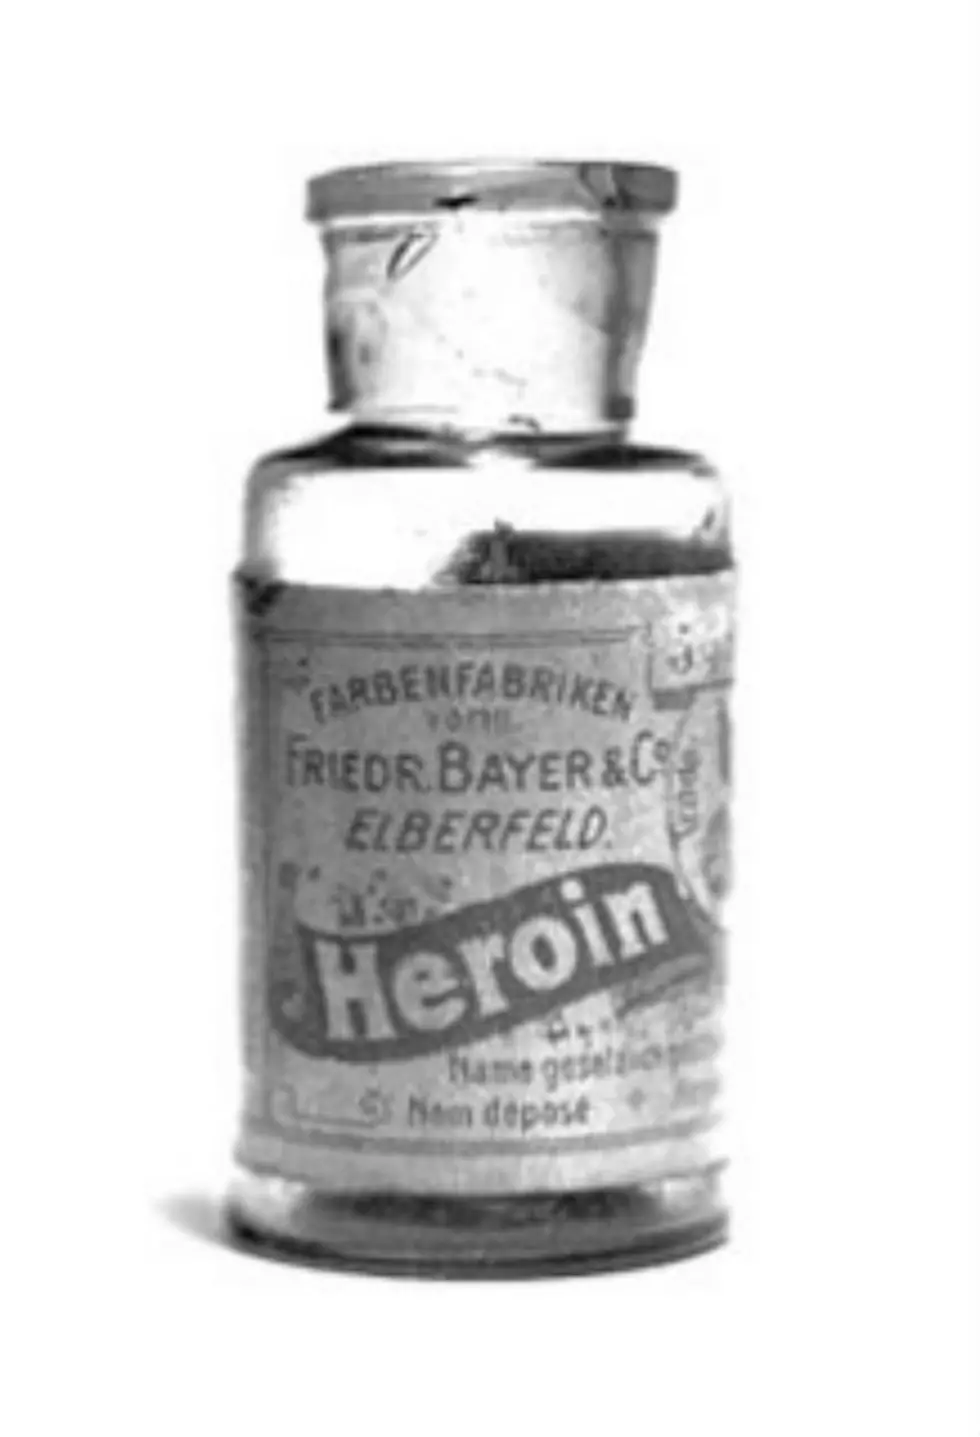 Heroin Re-Emerging As Drug of Choice In Laramie